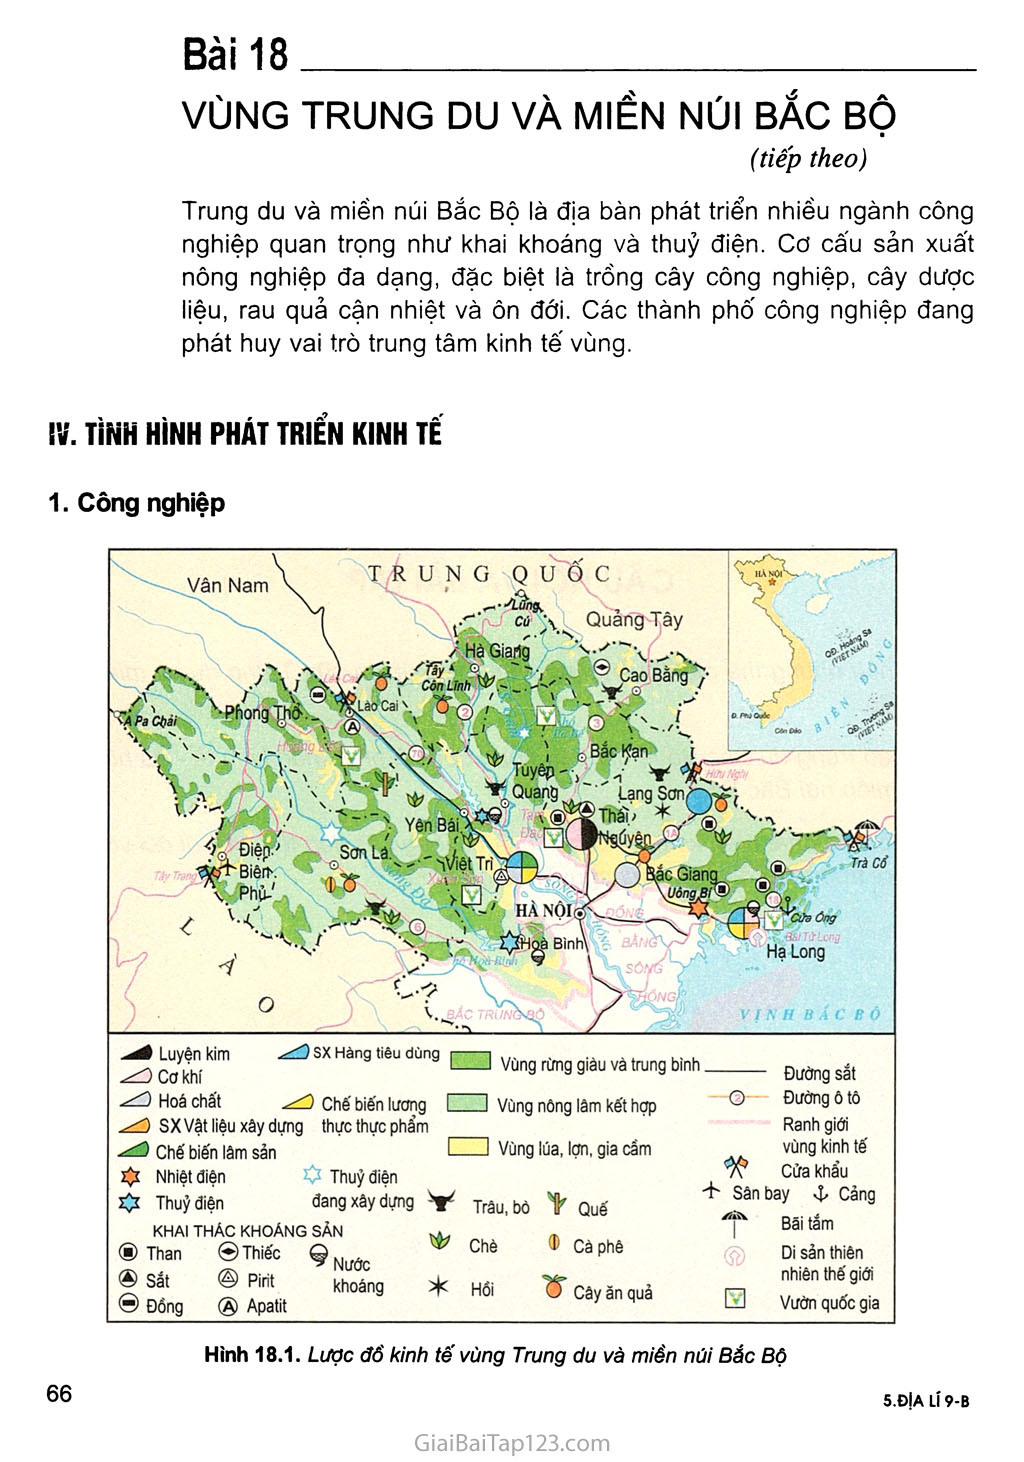 Bài 18. Vùng Trung du và miền núi Bắc Bộ (tiếp theo) trang 1